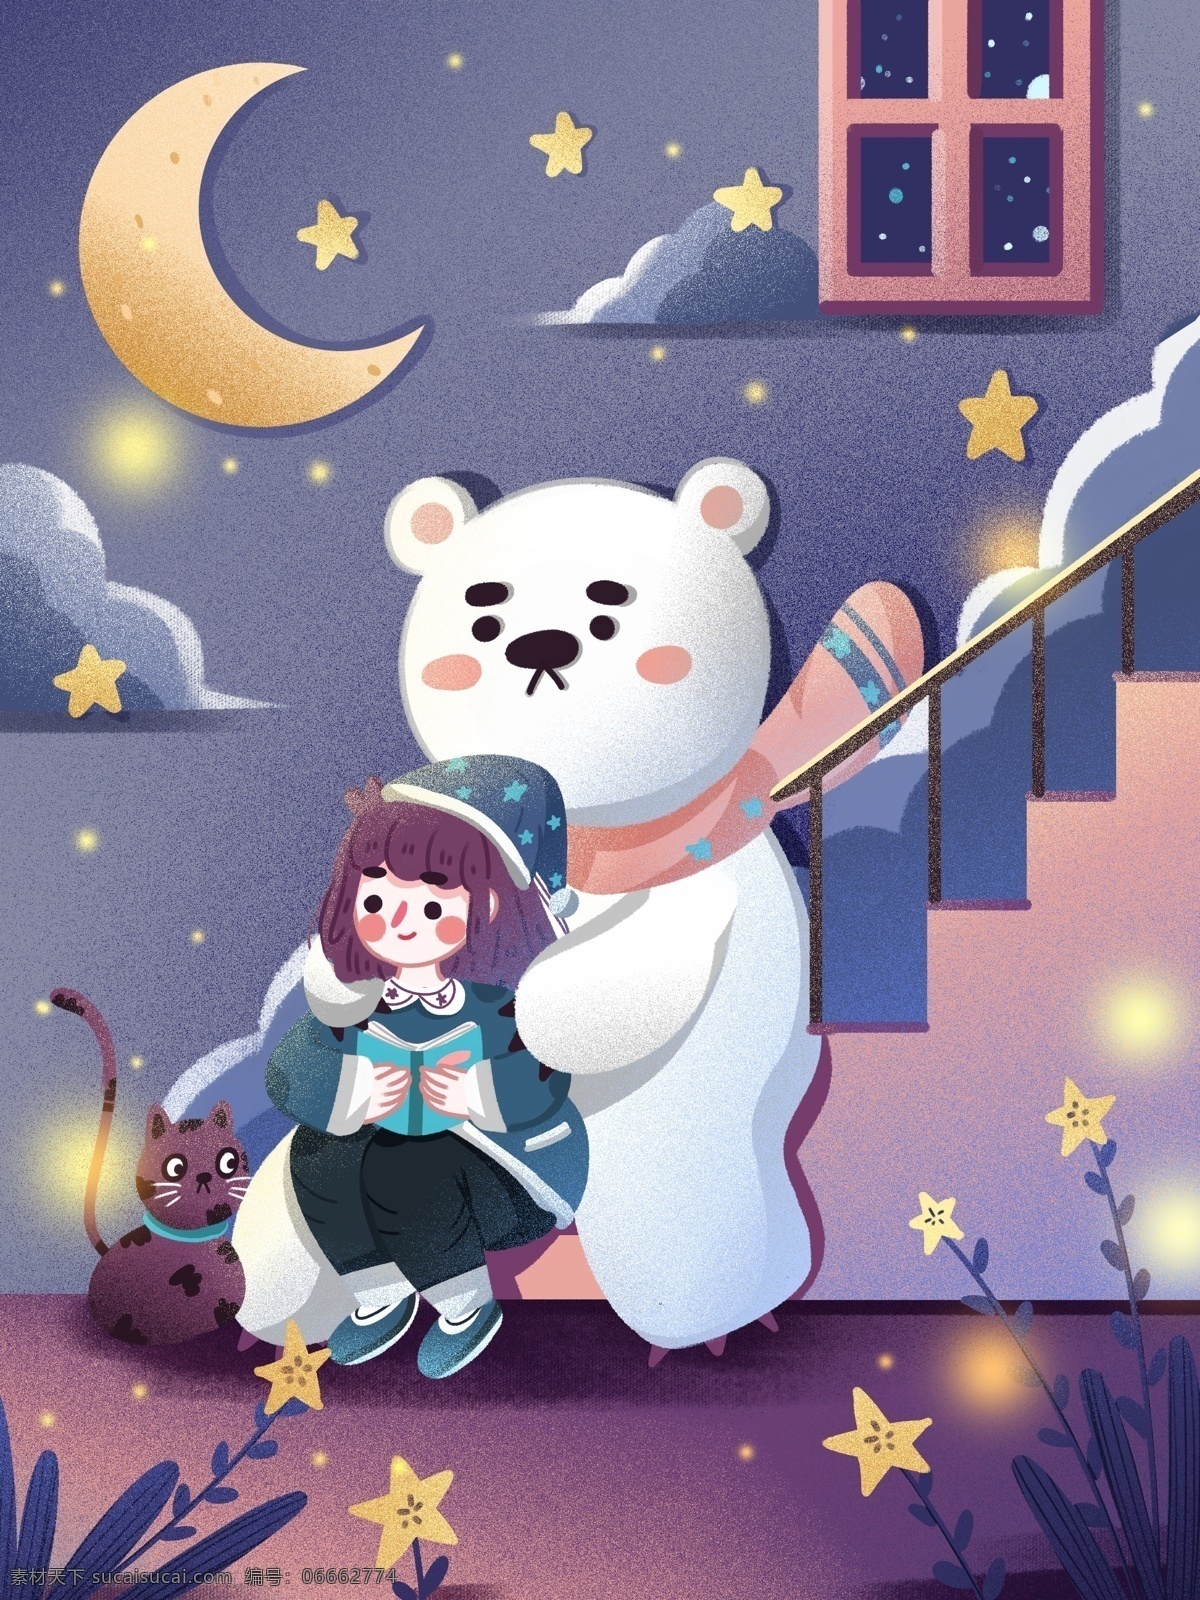 你好 晚安 治愈 熊熊 猫咪 可爱 温馨 浪漫 唯美 梦幻 星星 星空 温暖 熊猫 宠物 楼梯